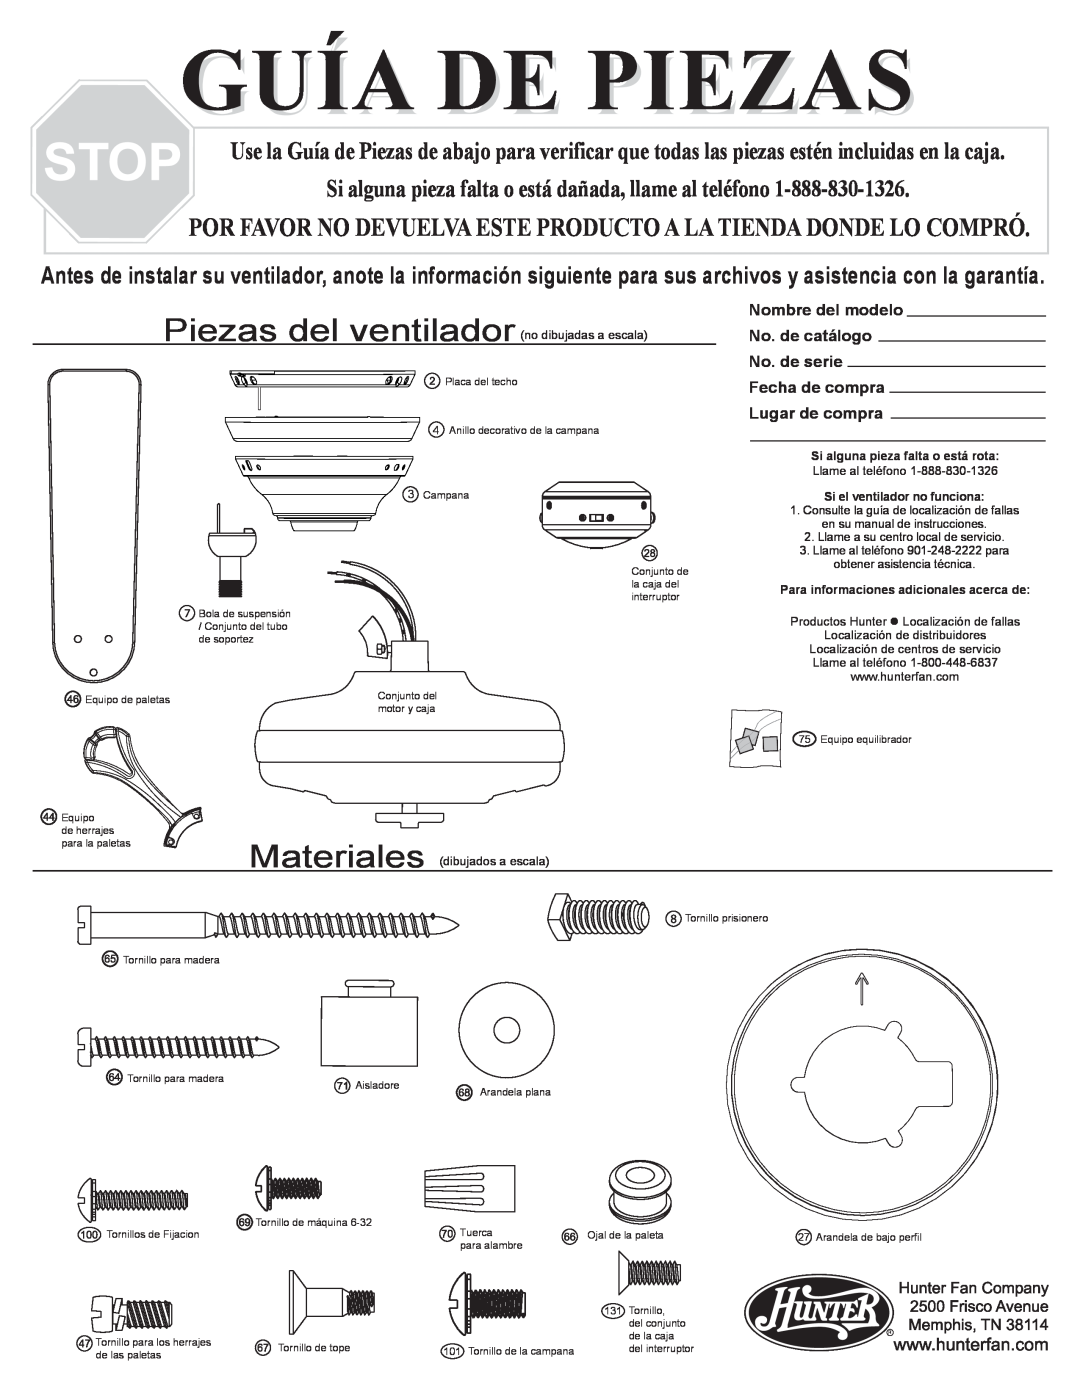 Hunter Fan 20516, 20512, 20510 Guía De Piezas, Piezas del ventilador, Nombre del modelo, No. de catálogo, No. de serie 